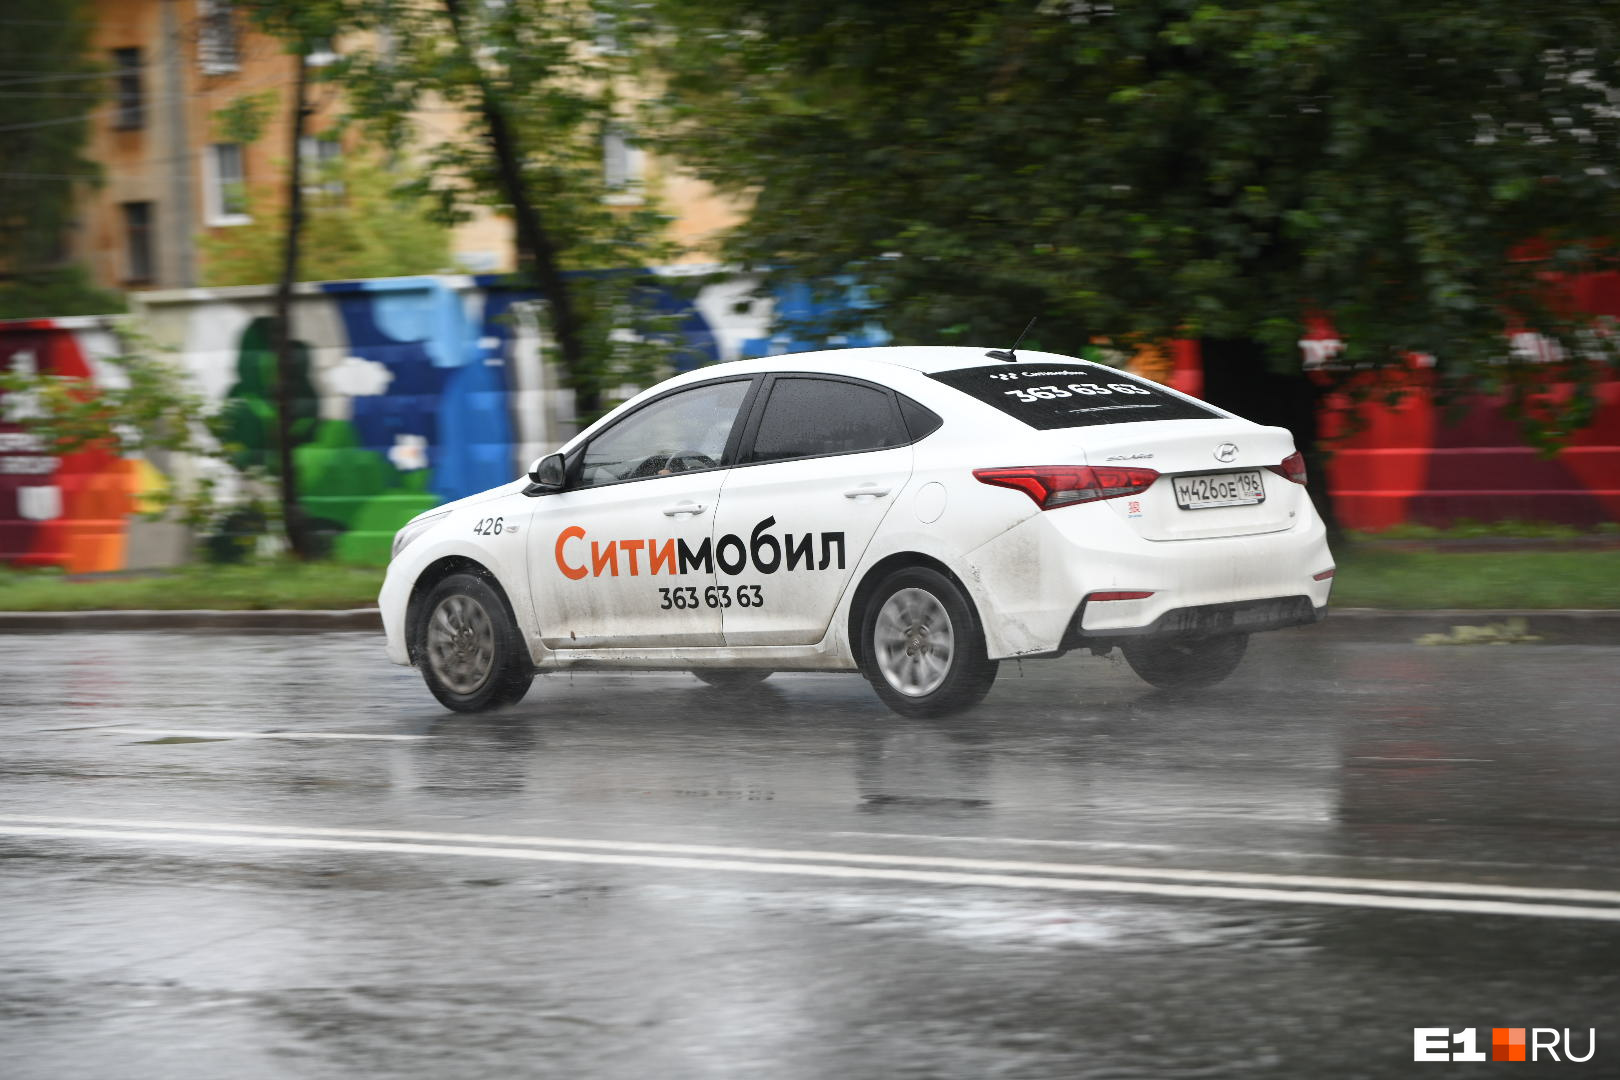 Федеральный агрегатор такси «Ситимобил» начал работу в Иркутске с 14 декабря